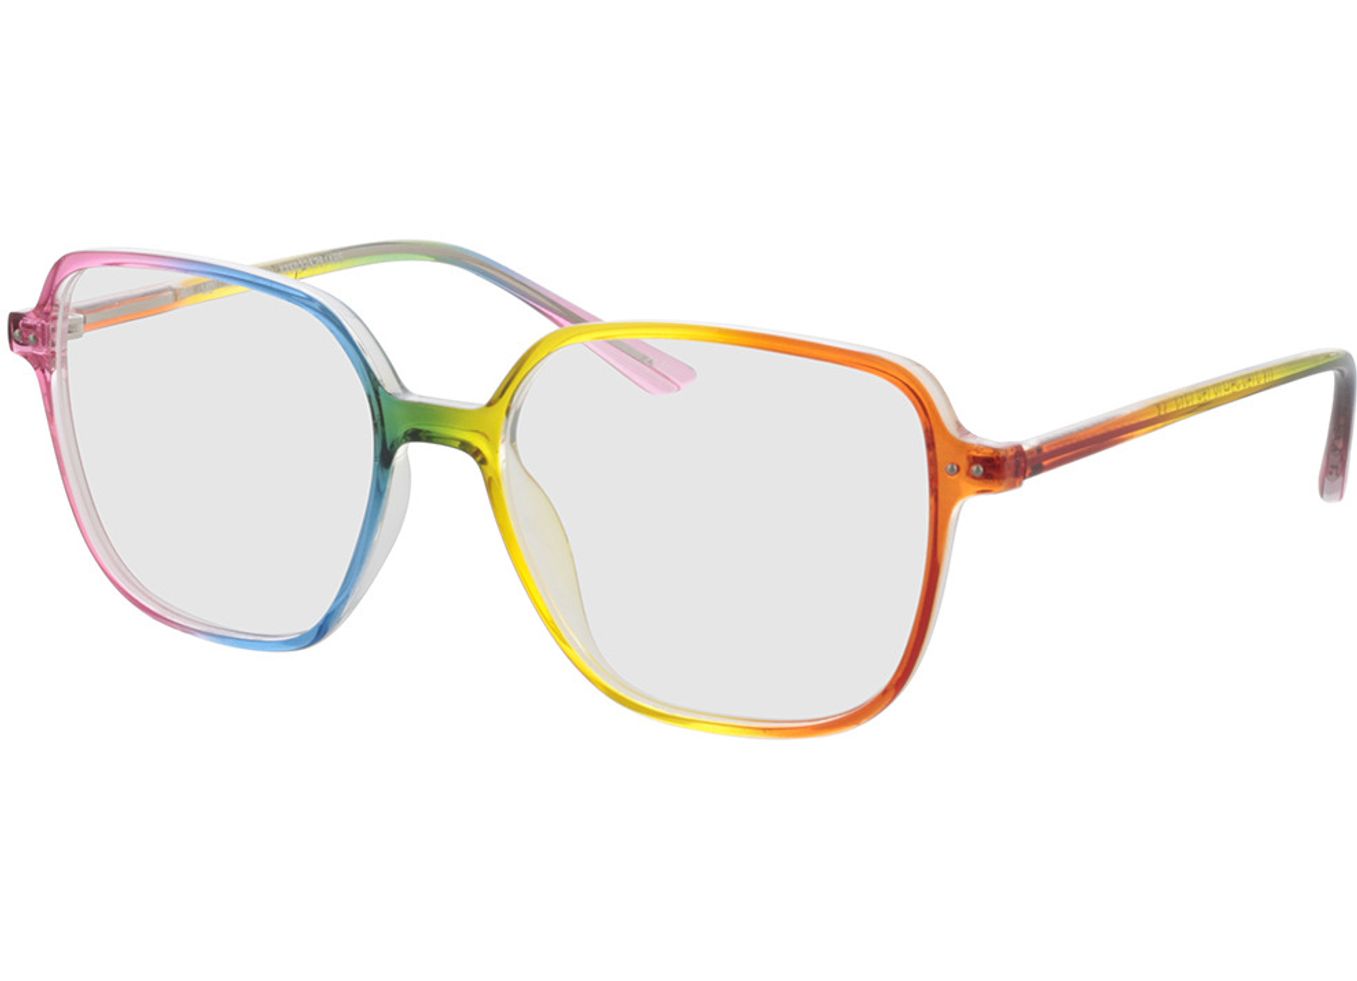 Rio - regenbogen Brillengestell inkl. Gläser, Vollrand, Eckig von Brille24 Collection